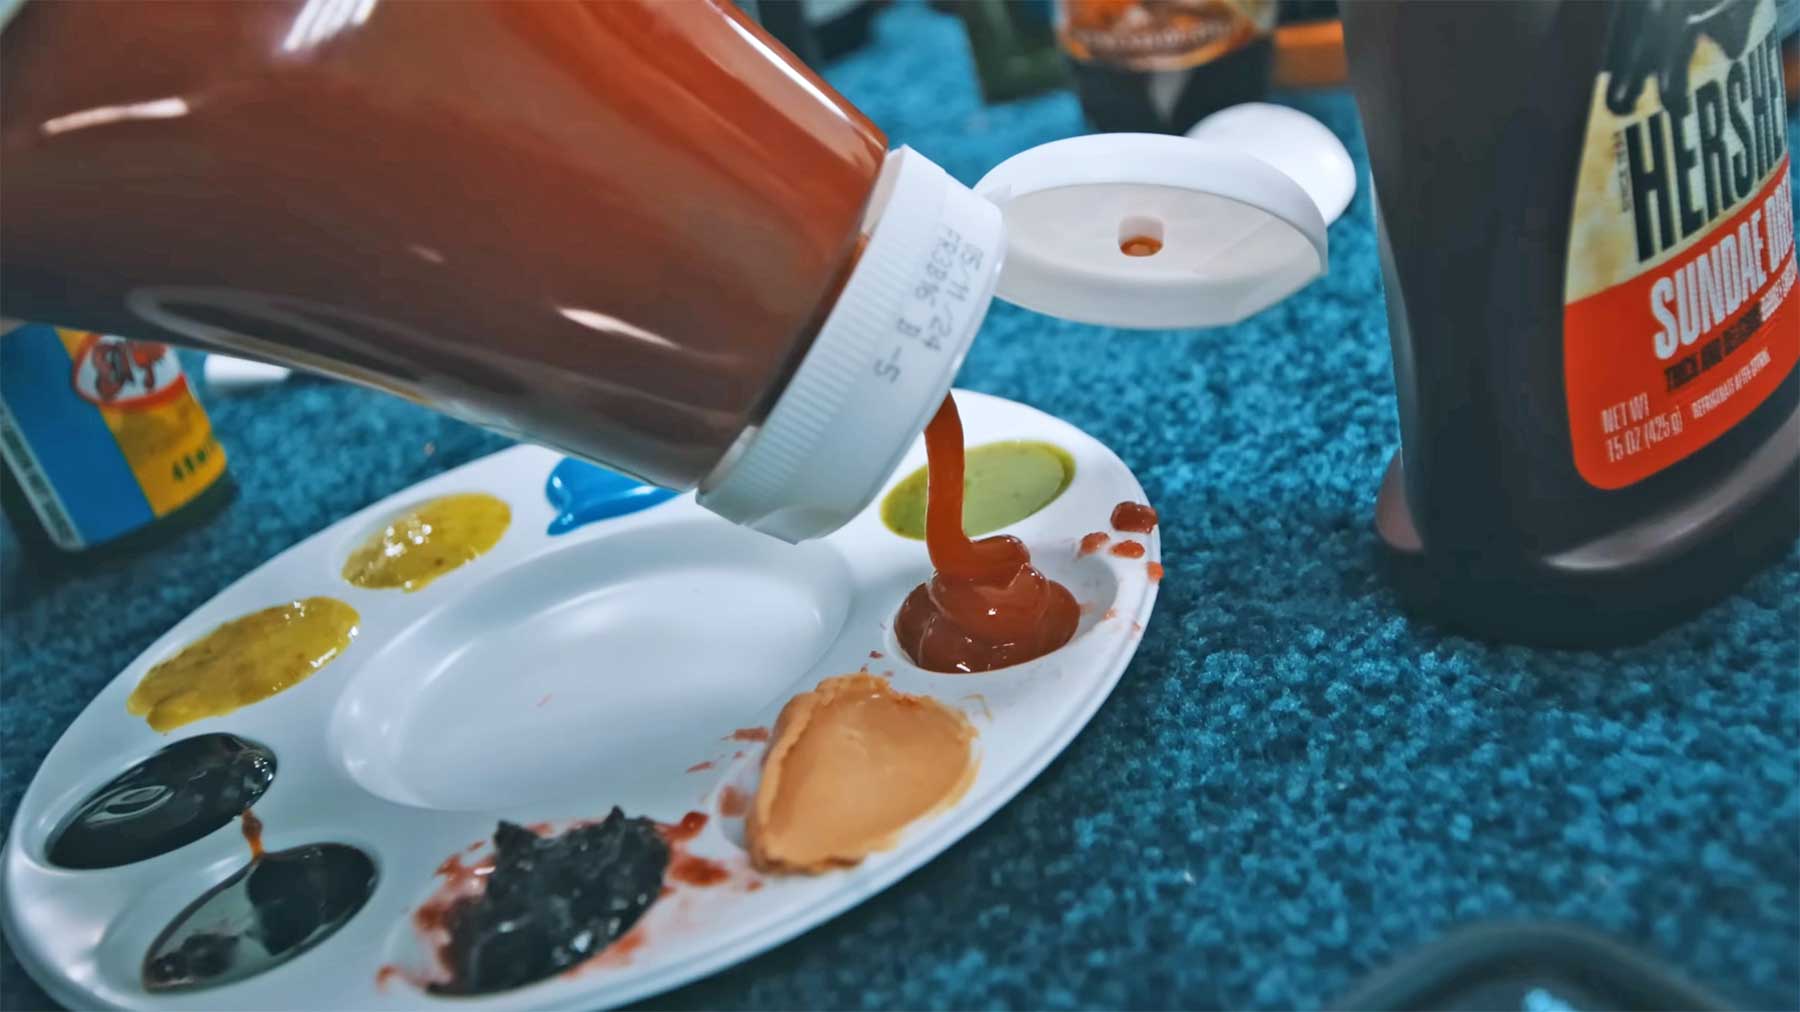 Bob-Ross-Bild mit Ketchup & Soßen statt Farben malen mit-sossen-malen-sauce-bob-ross-painting 